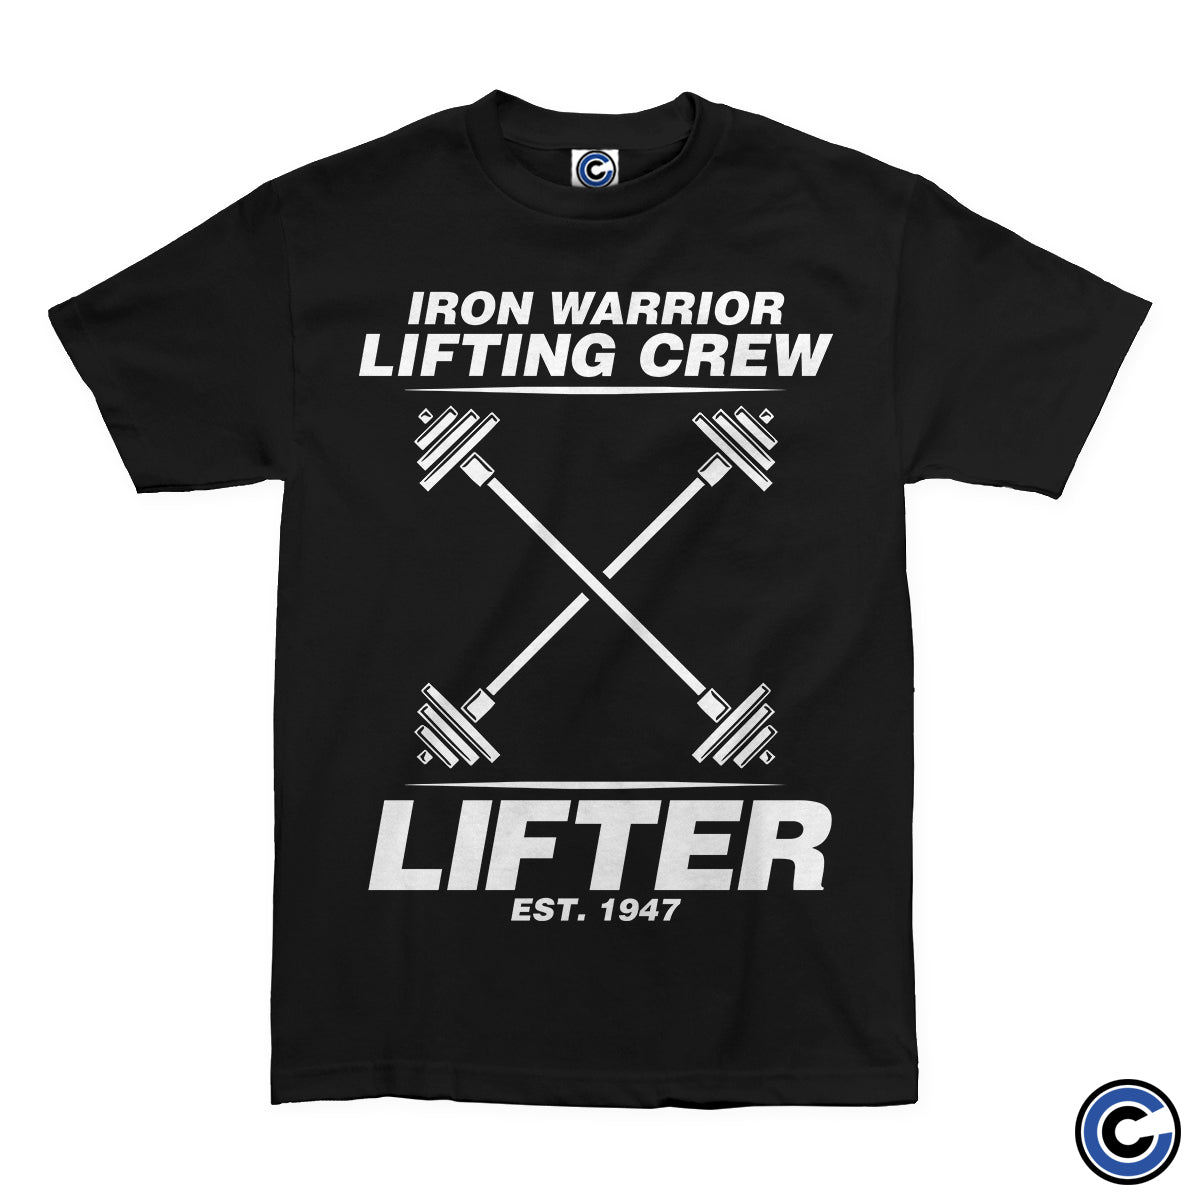 Lifter "Iron Warrior Lifting Crew" Shirt